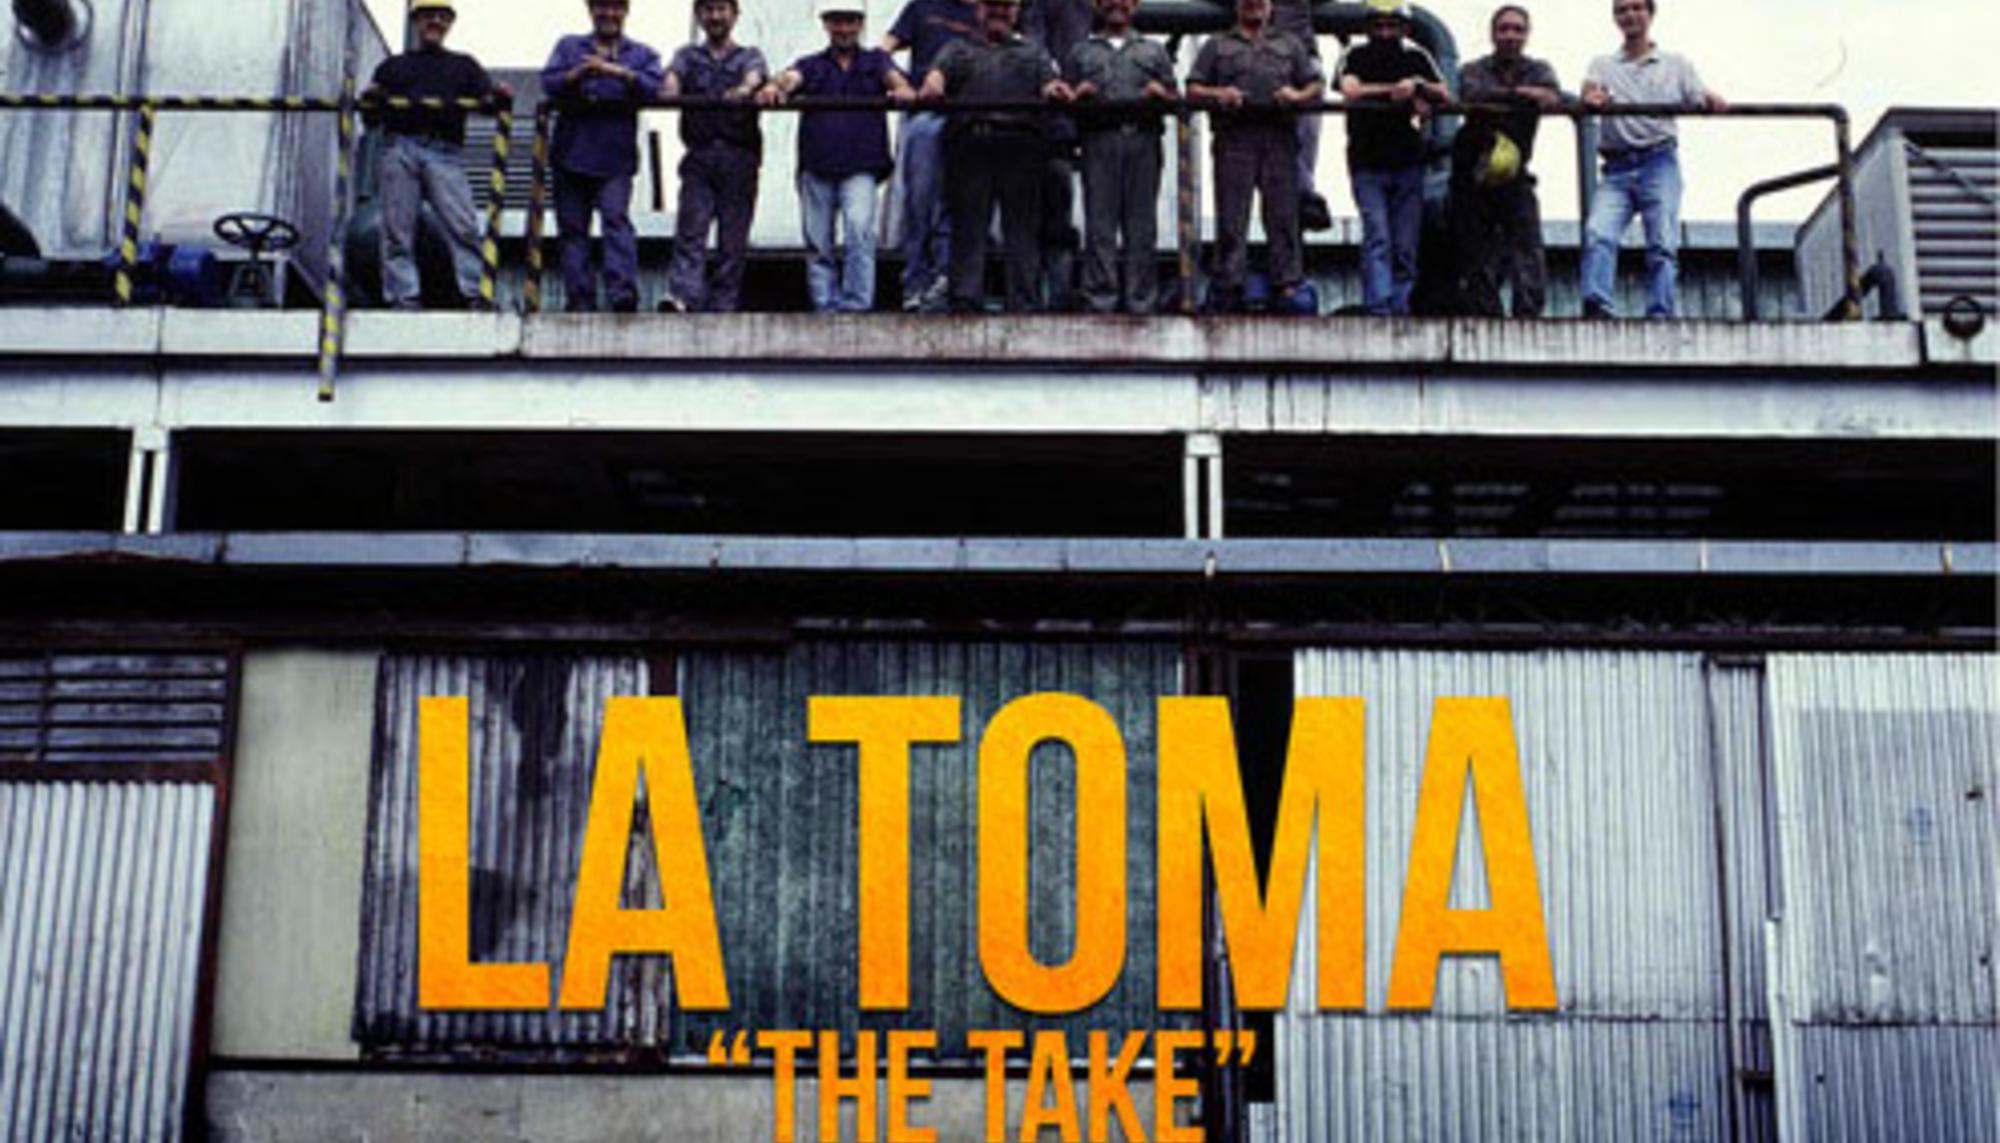 The Take (La Toma)